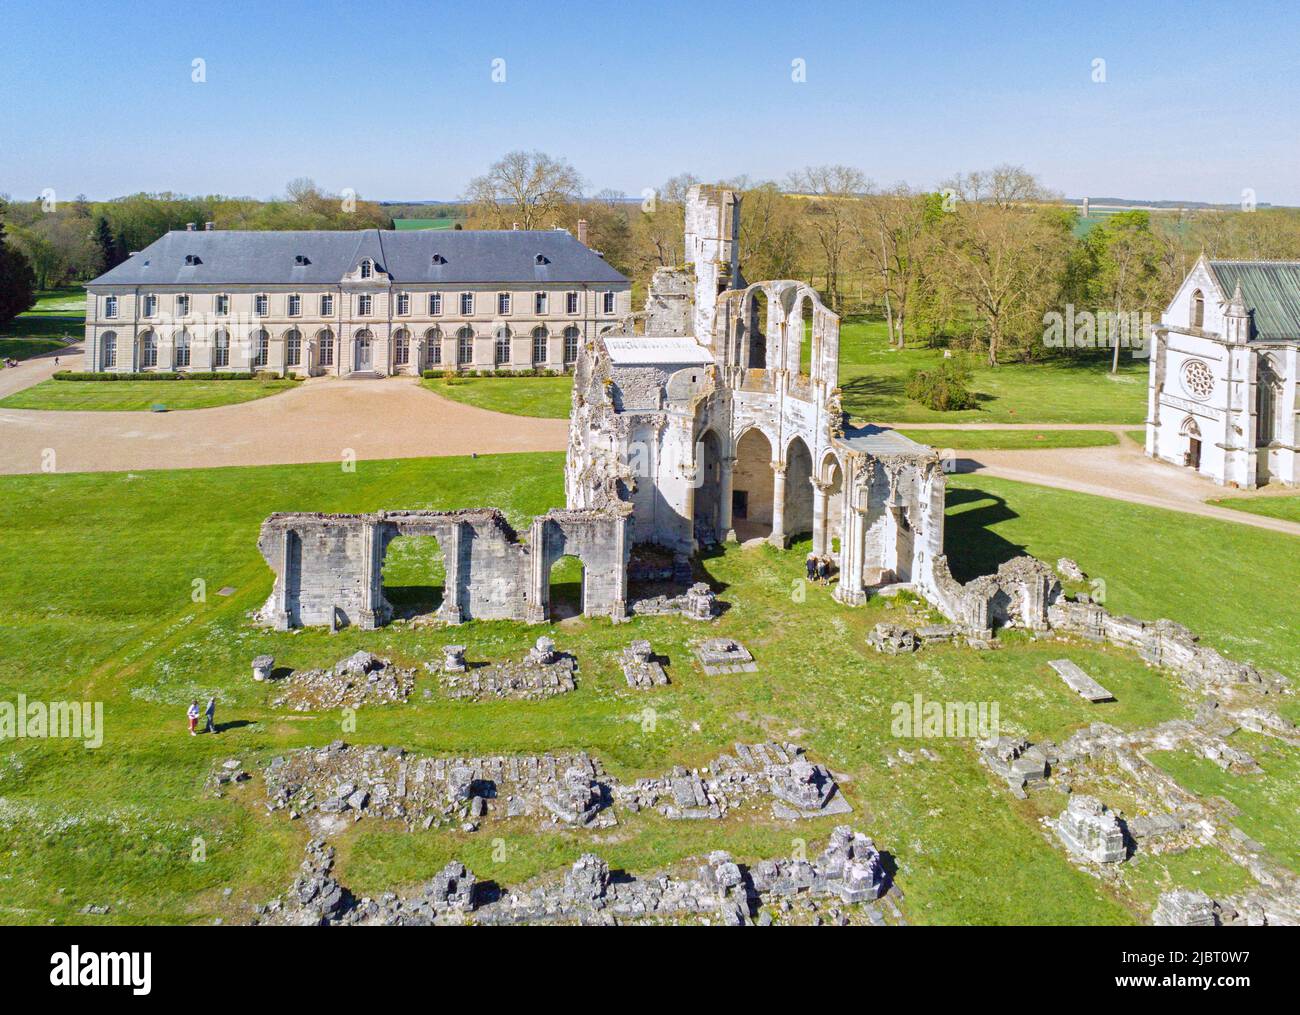 France, Oise (60), Fontaine-Chaalis, l'abbaye cistercienne de Chaalis et ses ruines médiévales, devenue musée Jacquemart André (vue aérienne) Stock Photo